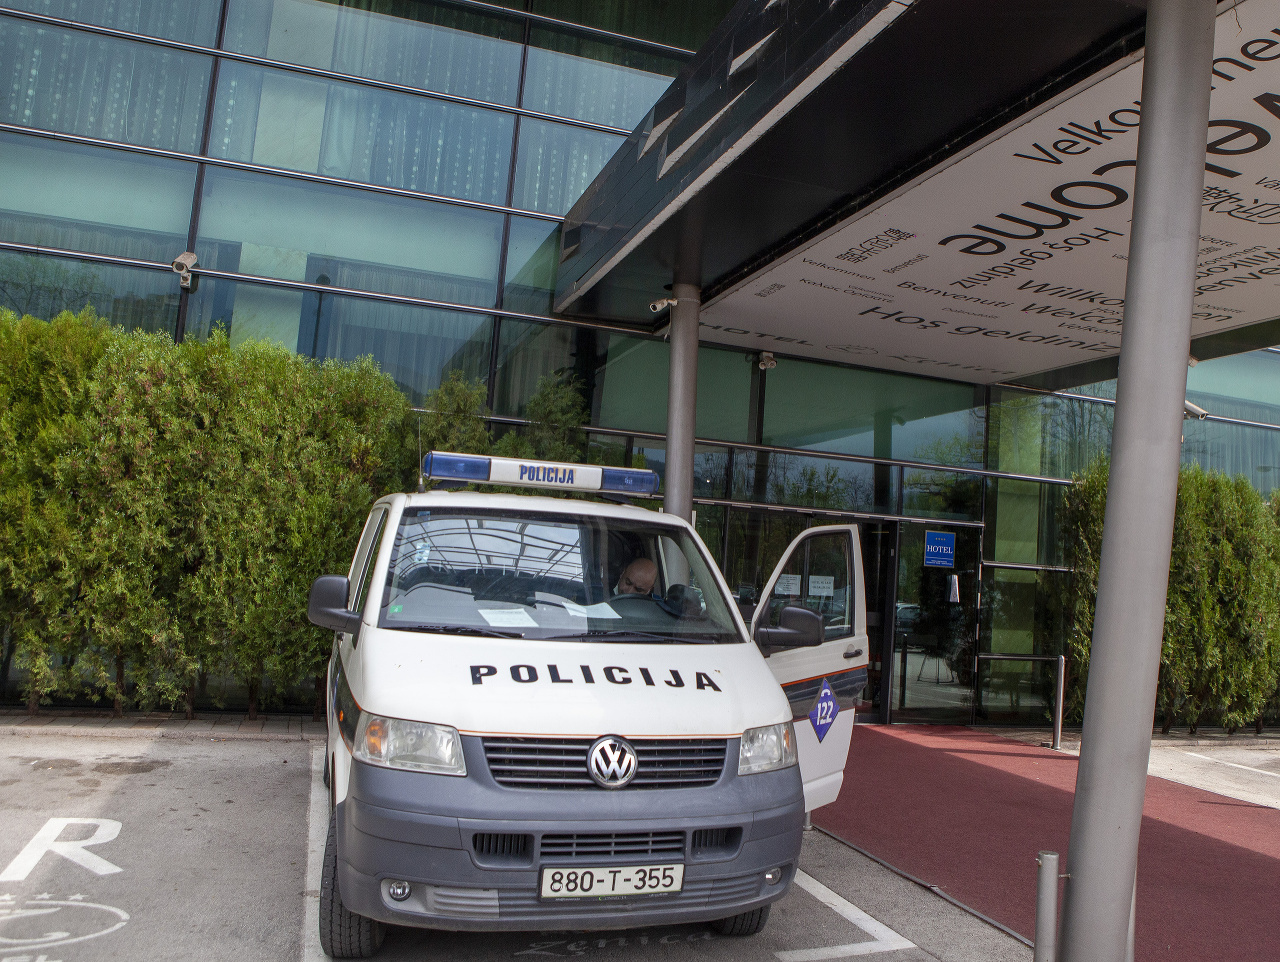 Policajné auto pred hotelom v meste Zenica.